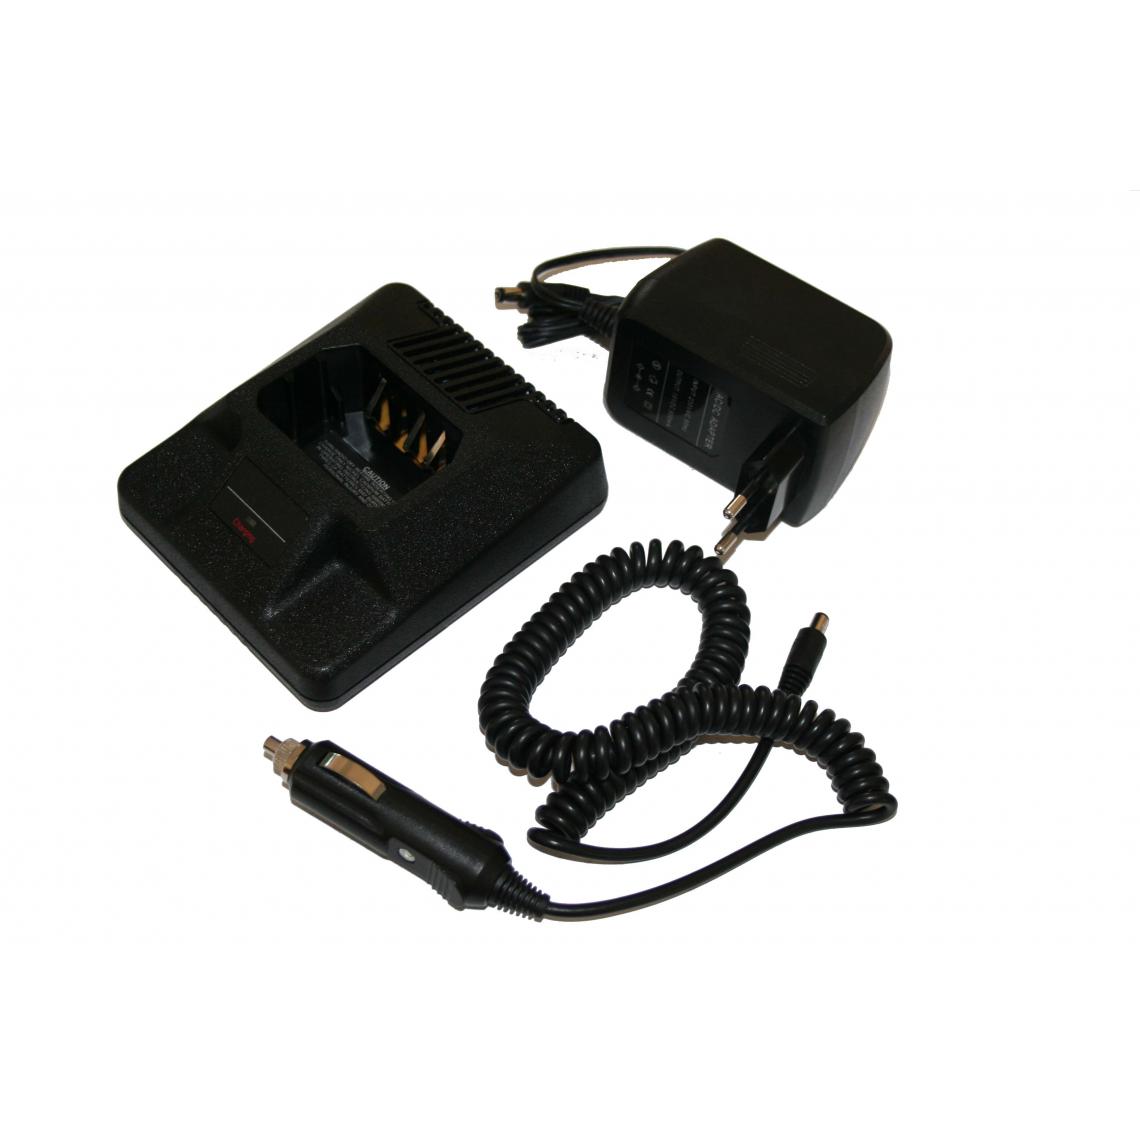 Vhbw - vhbw Chargeur de batterie compatible avec Yaesu VX-150, VX-160 batterie de radio, talkie walkie (station, câble + prise allume-cigare) - Autres accessoires smartphone